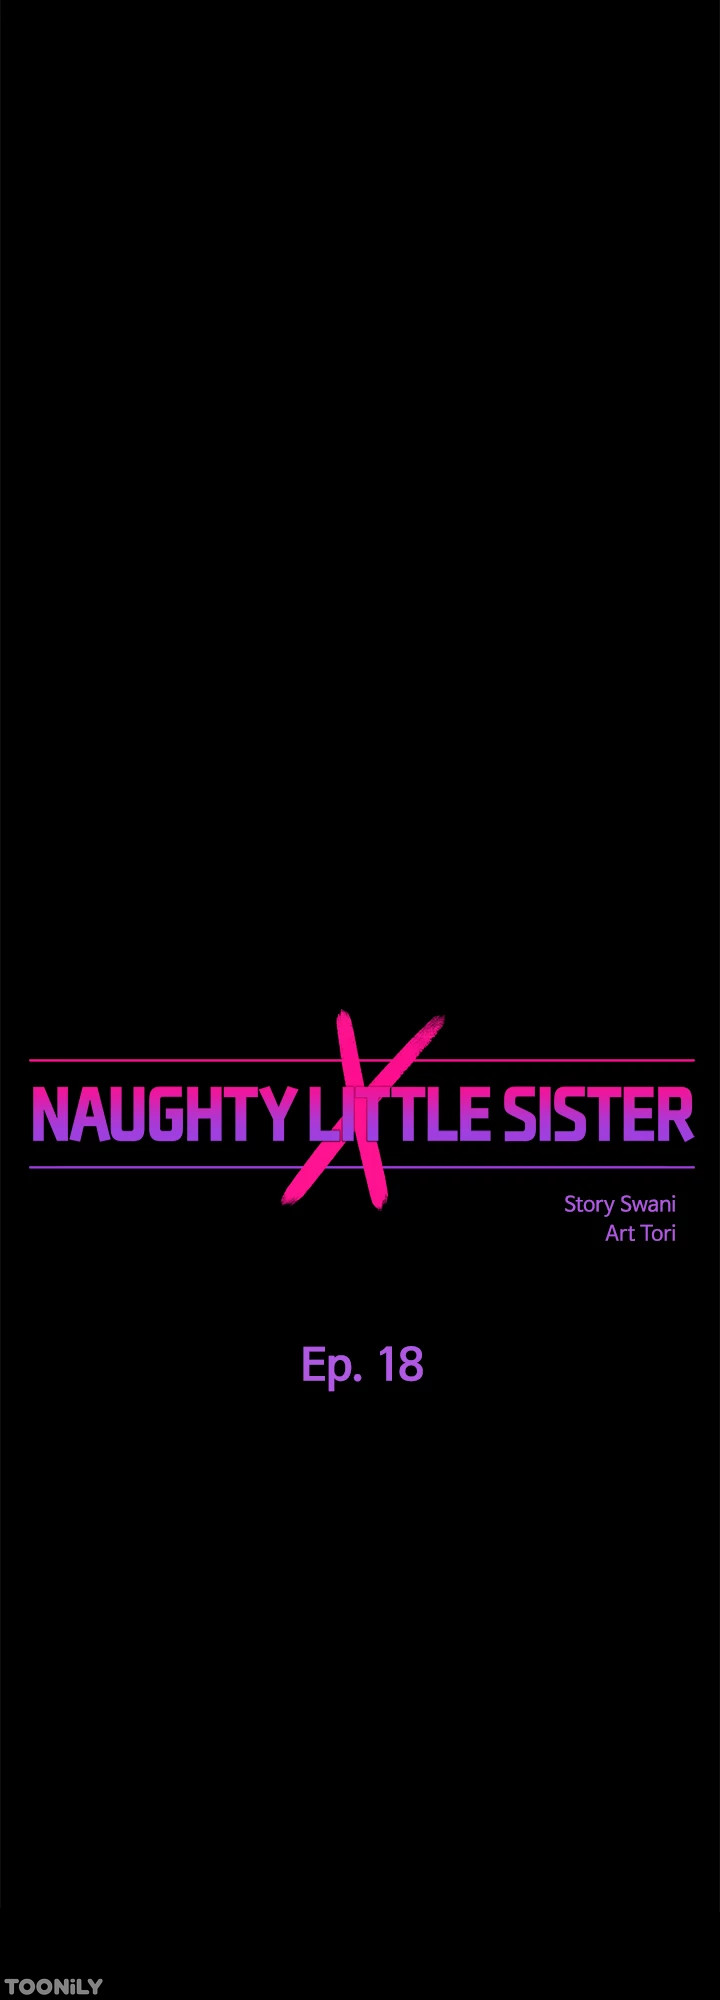 Watch image manhwa Naughty Little Sister - Chapter 18 - 03a5bb1d7a5d9d4cdd - ManhwaXX.net